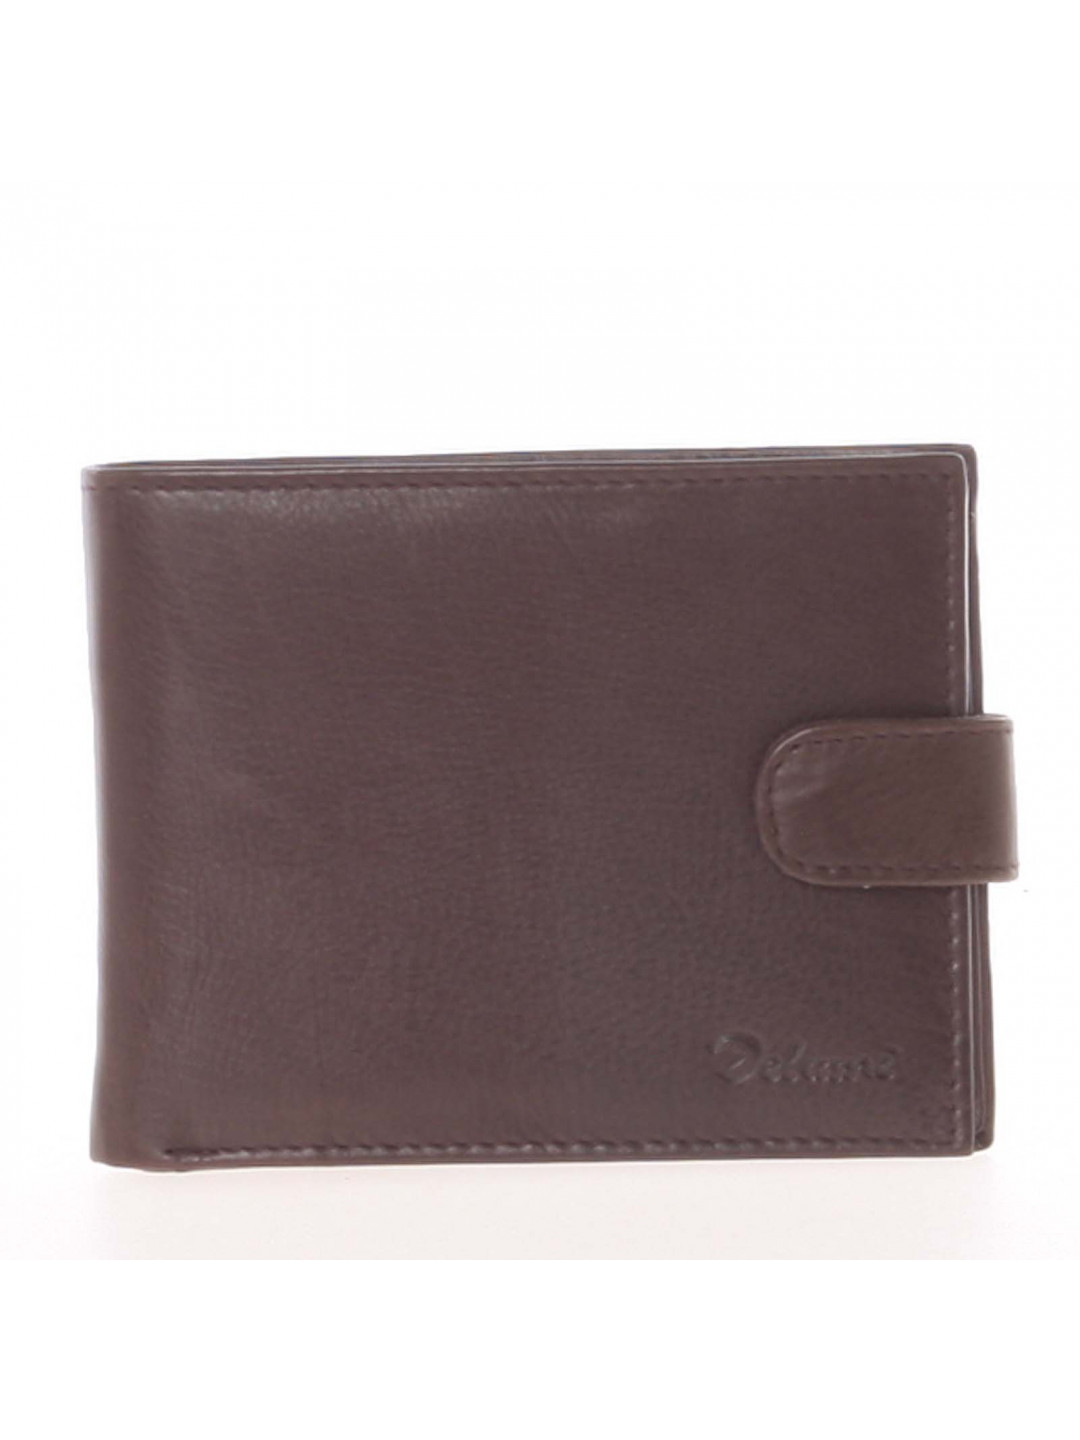 Pánská kožená tmavě hnědá peněženka – Delami 8945